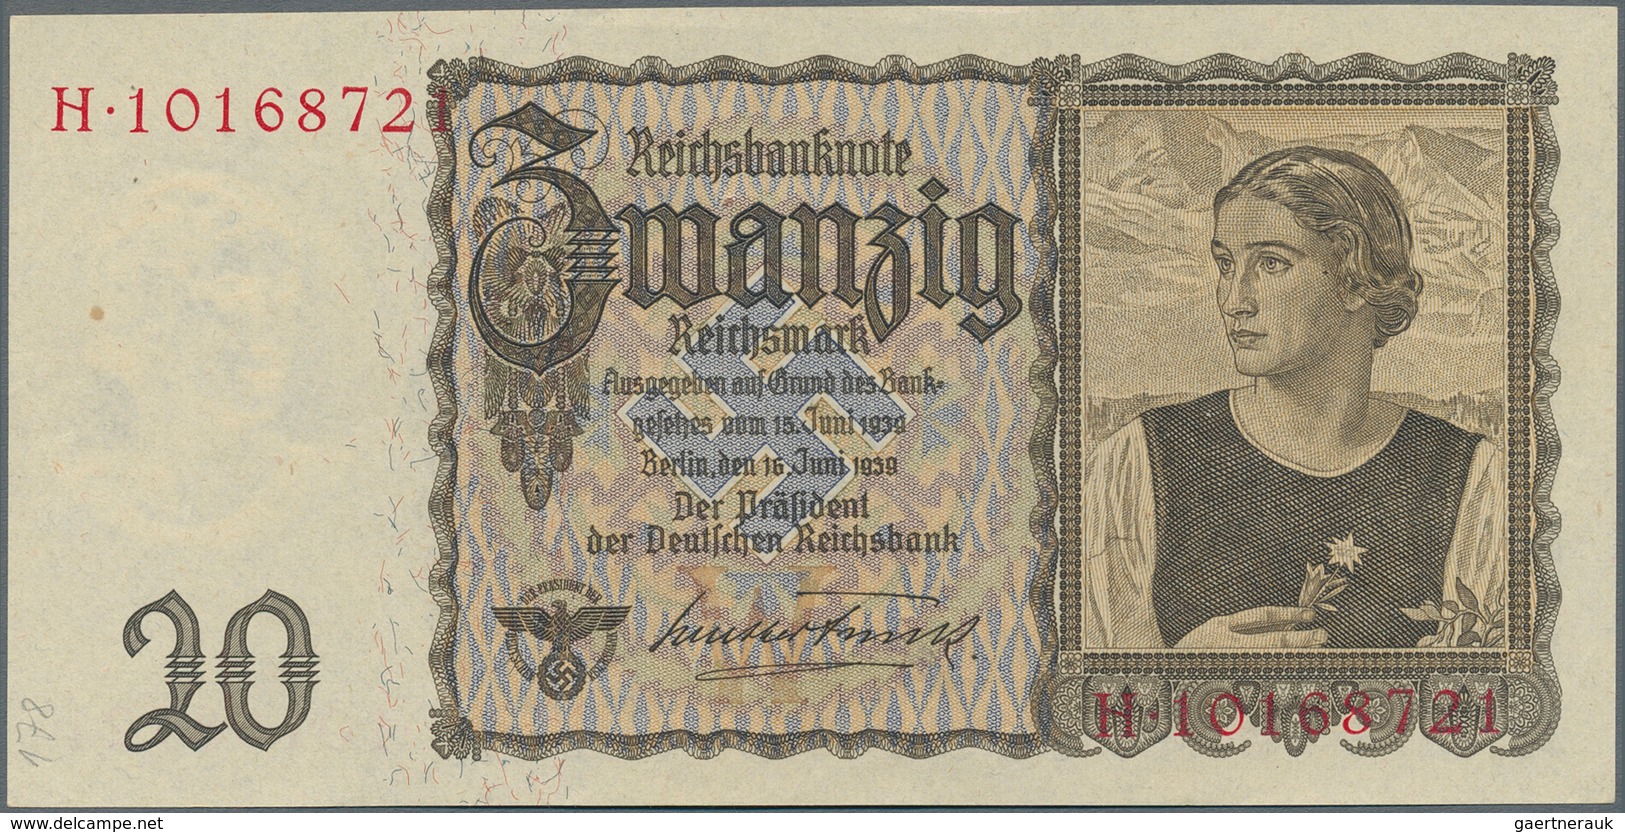 Deutschland - Sonstige: Großes Sammelalbum mit 390 Banknoten vom Kaiserreich bis Bundesrepublik, ein